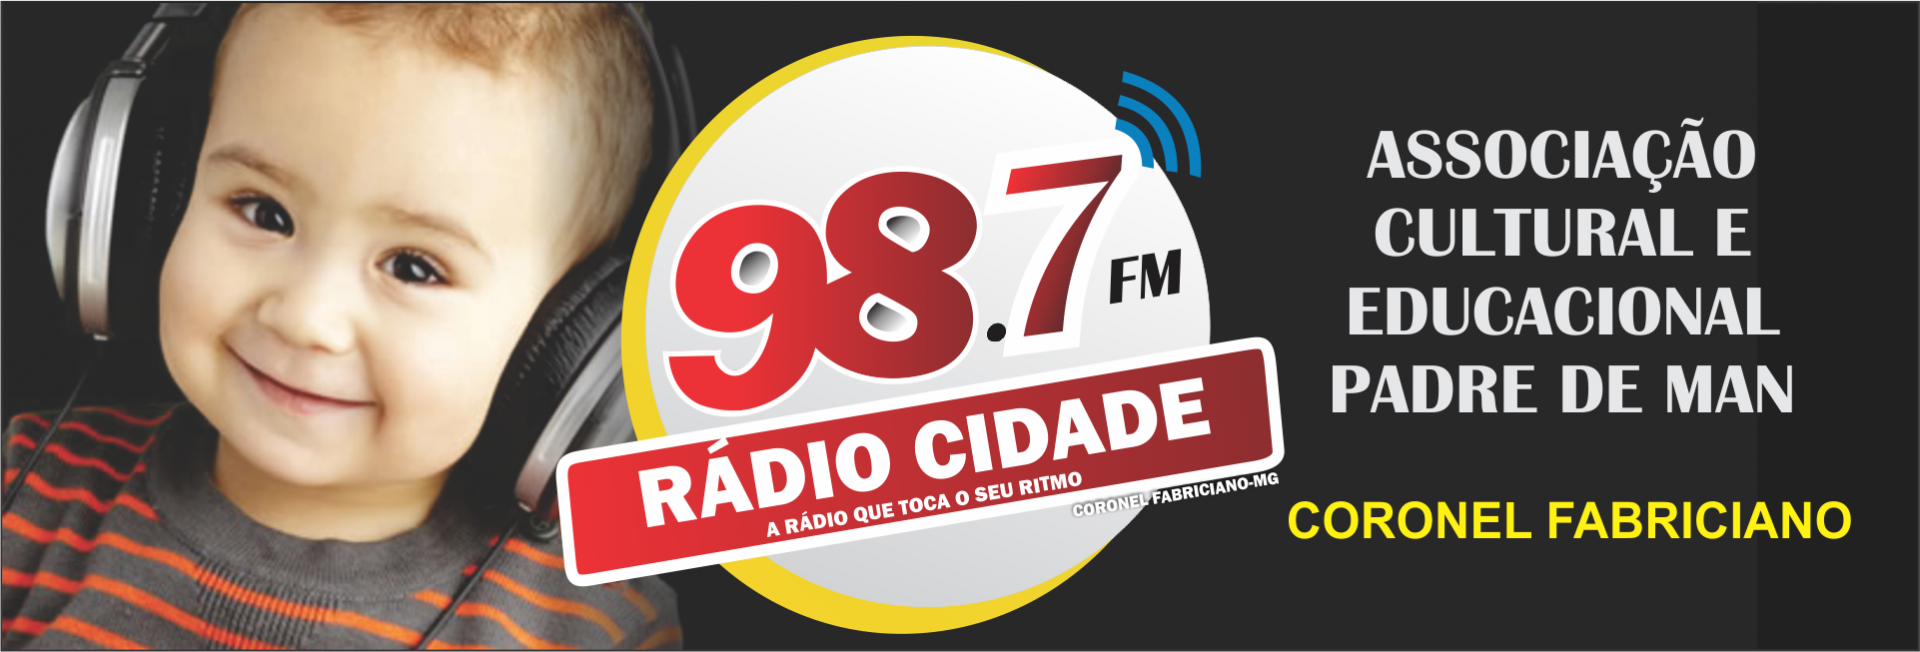 Rádio Cidade FM 98,7